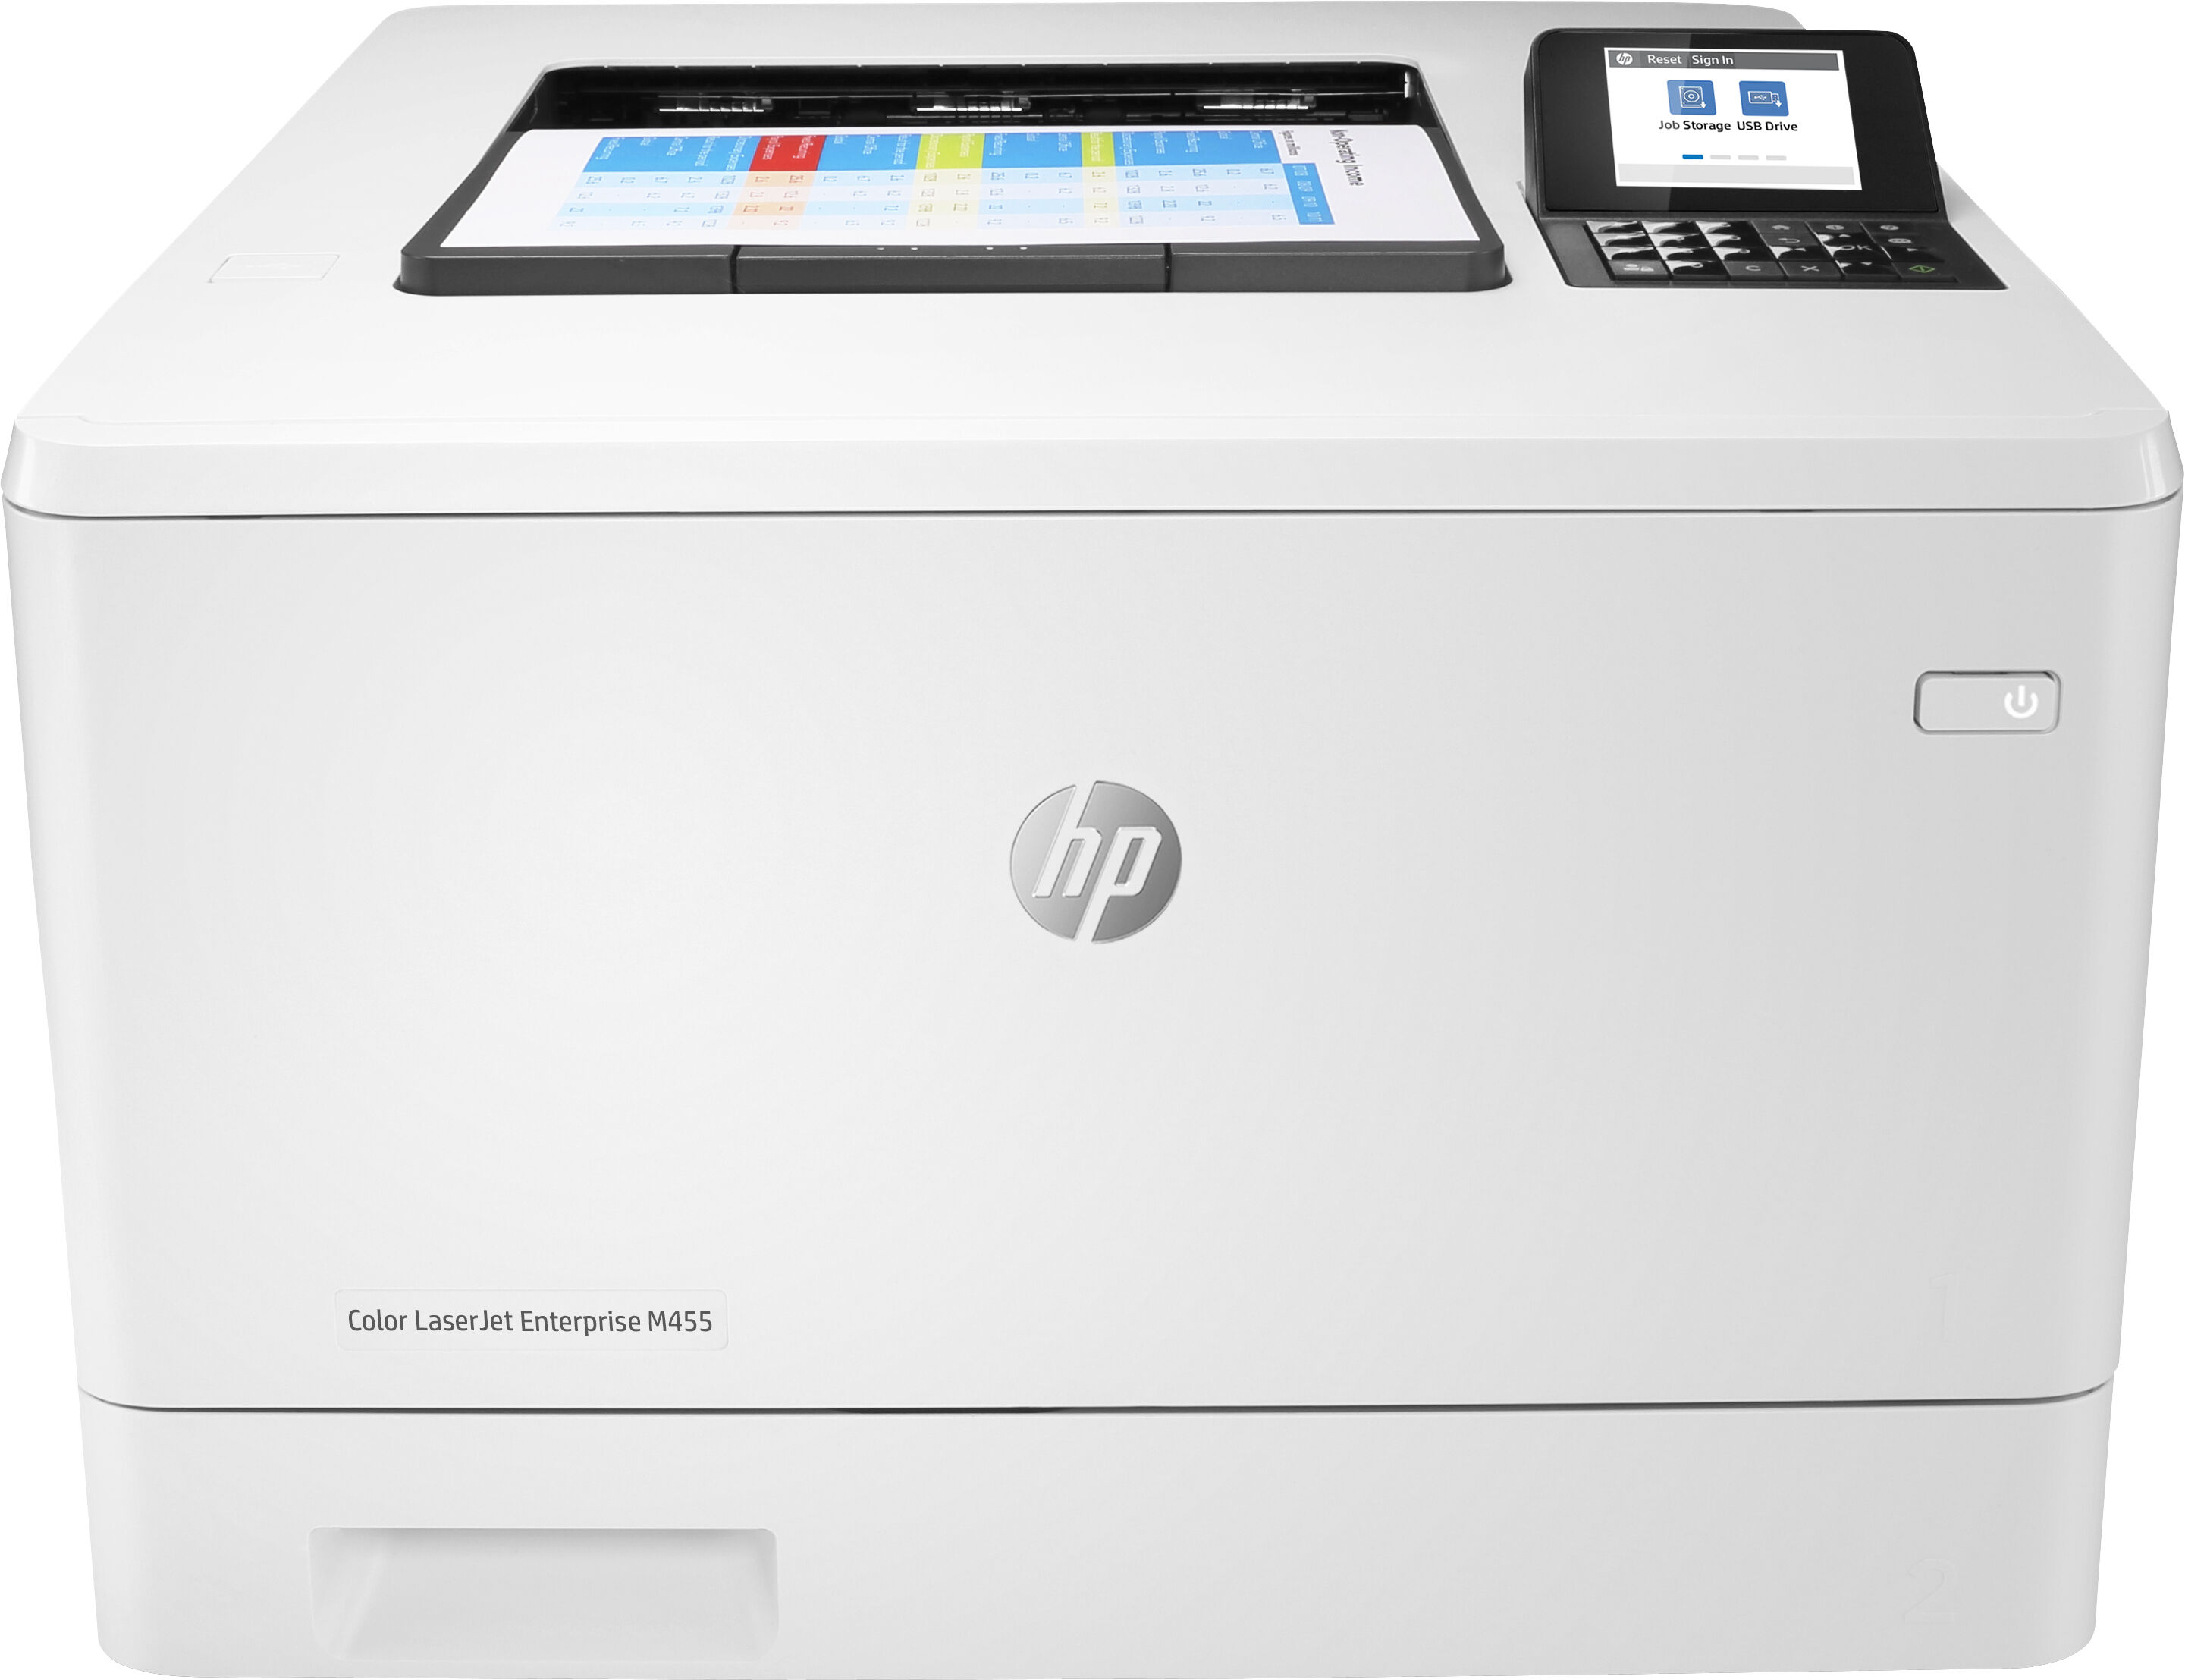 HP Stampante laser  Color LaserJet Enterprise M455dn, Colore, per Aziendale, Stampa, Compatta; Avanzate funzionalità di sicurezza; Efficienza energetica; Stampa fronte/retro [3PZ95A#B19]